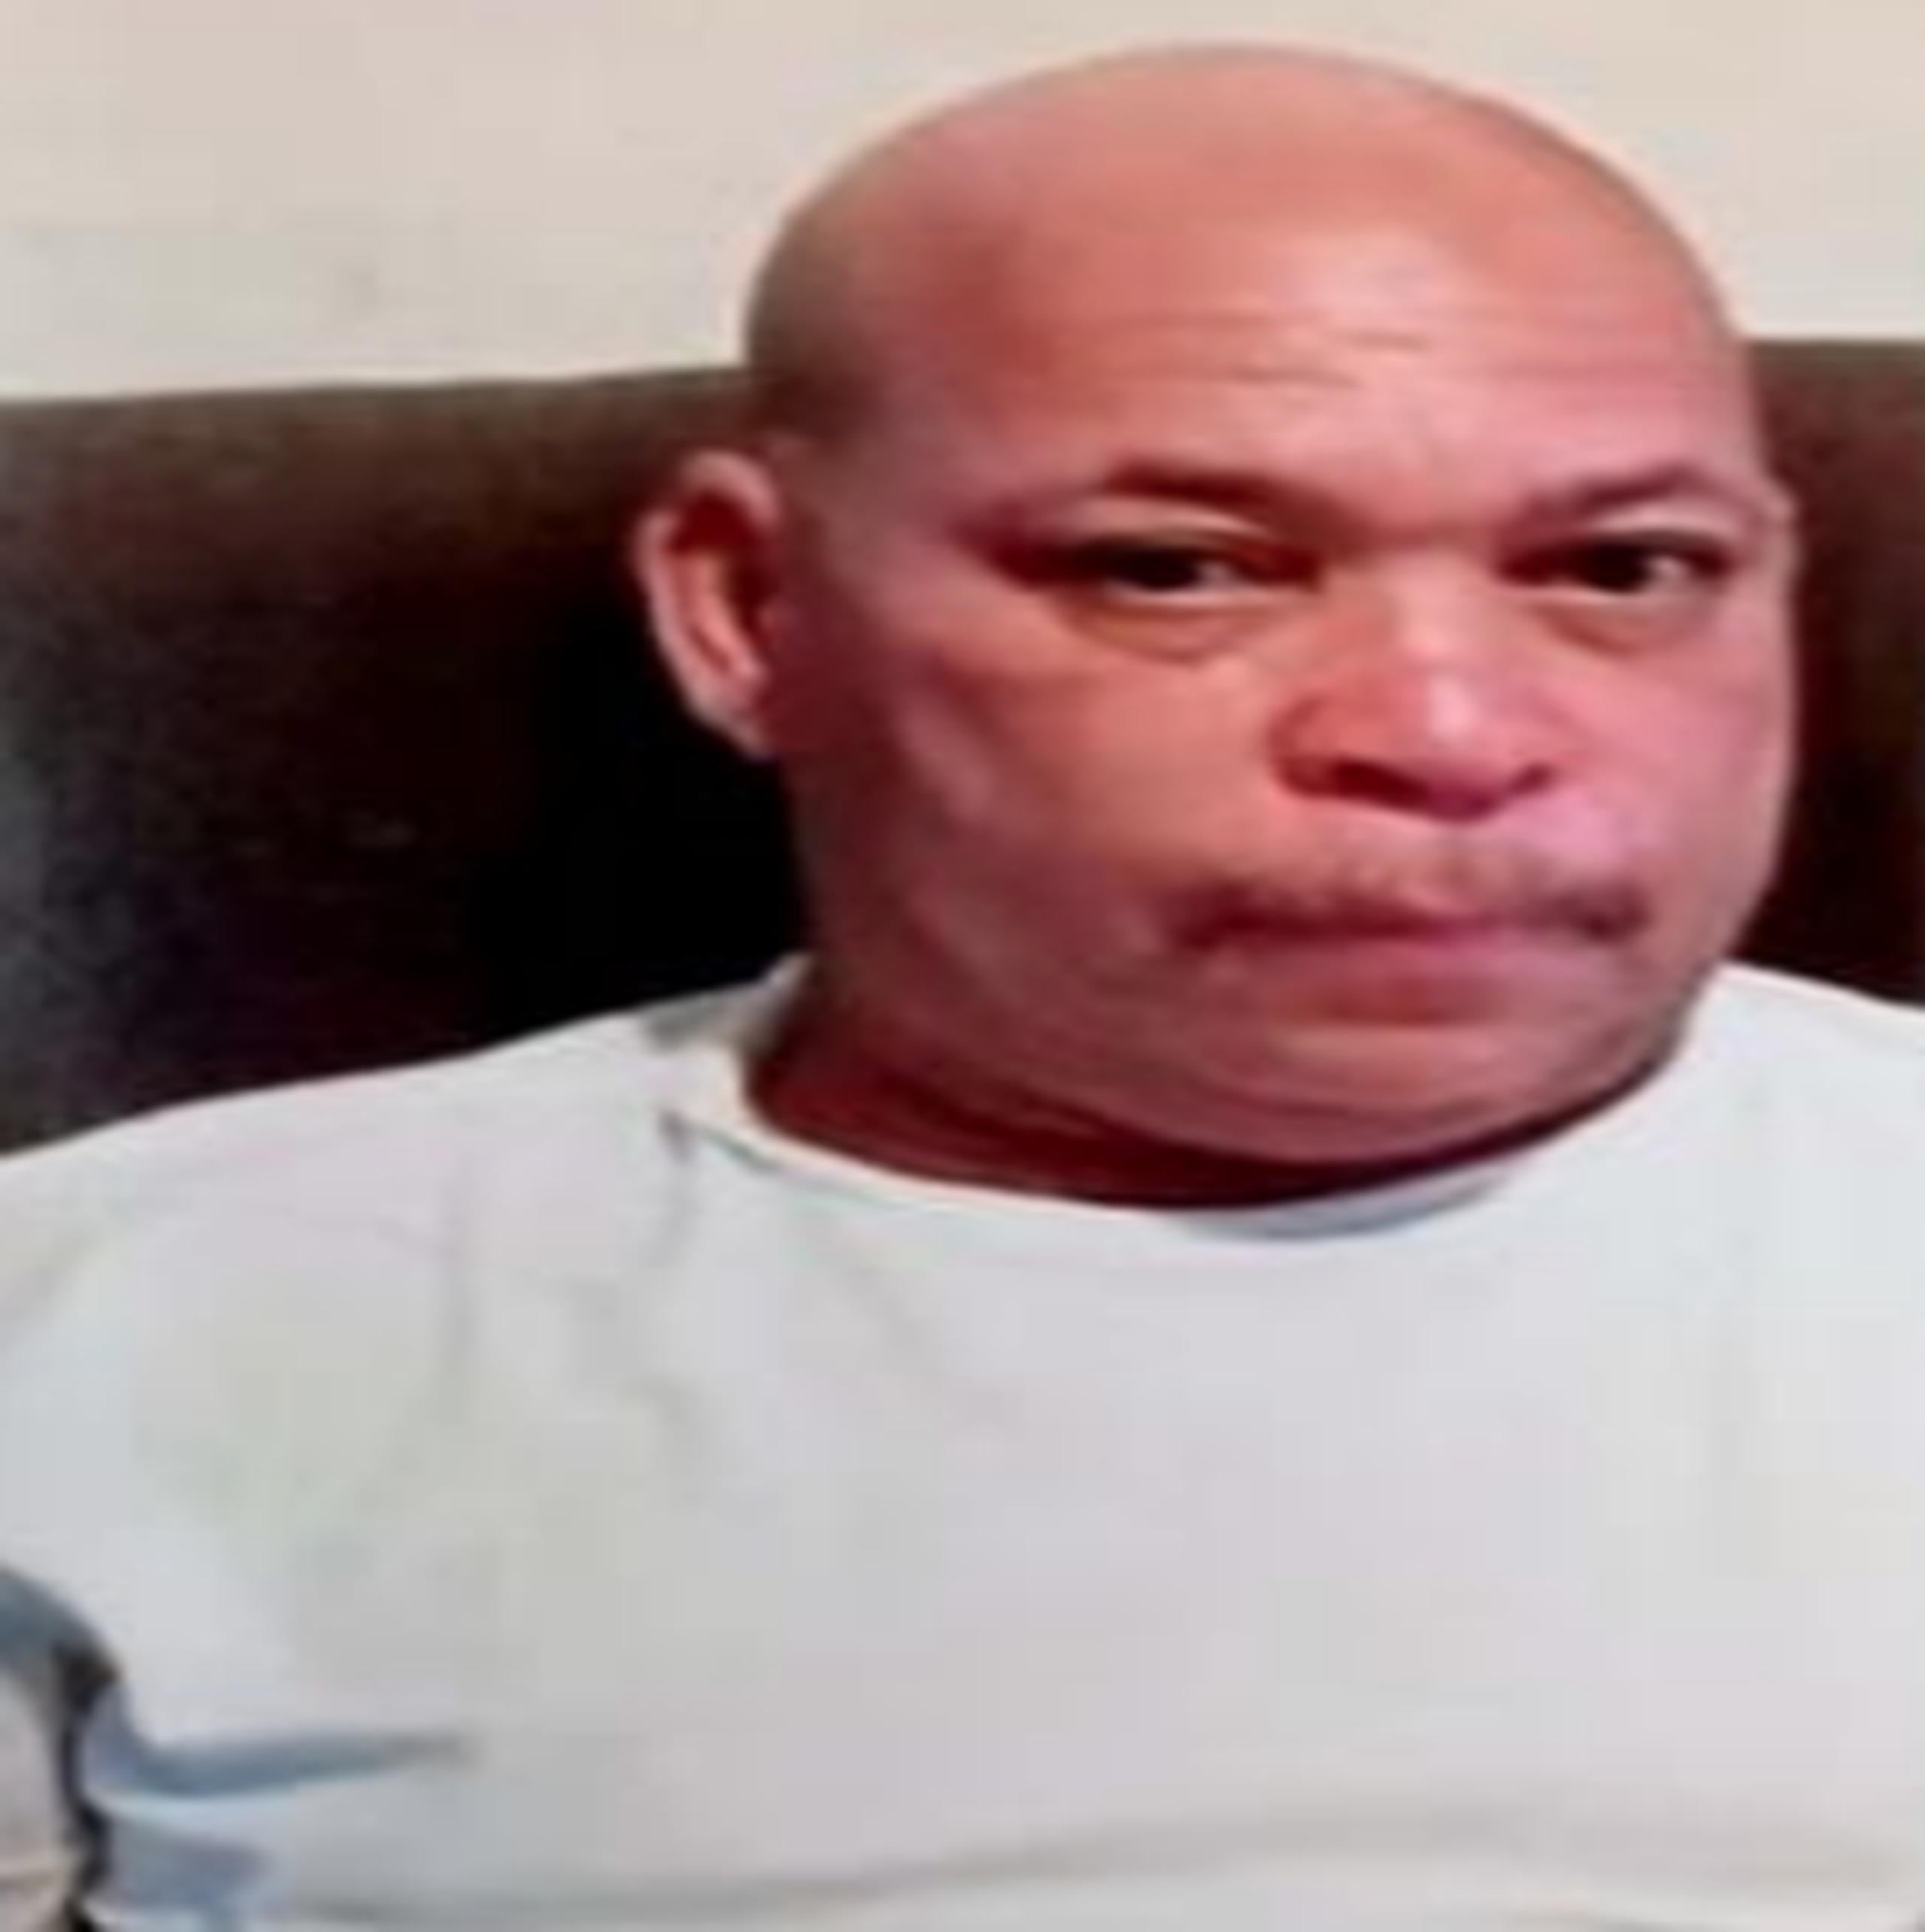 Santiago Villalongo Morales de 54 años, se encuentra desaparecido desde el 5 de abril, del barrio San Isidro en Canóvanas, donde vive.